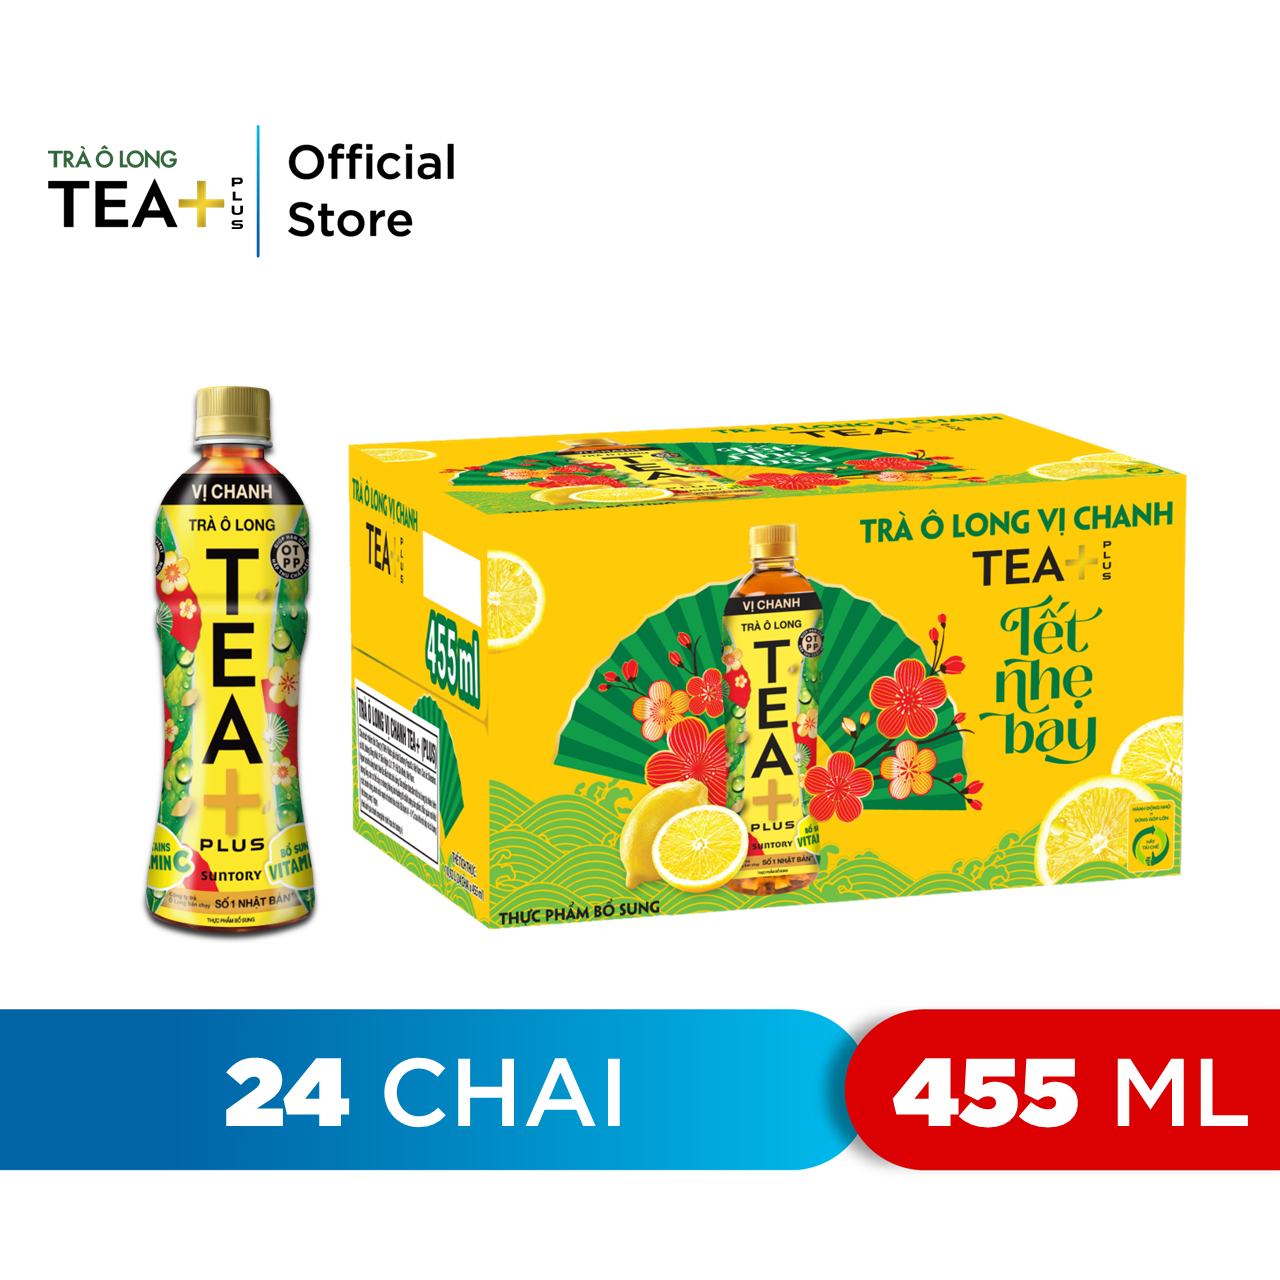 HCM - FREESHIP 0Đ Thùng 24 Chai Trà Ô long Tea+ Vị Chanh 455ml hoặc 450 ml